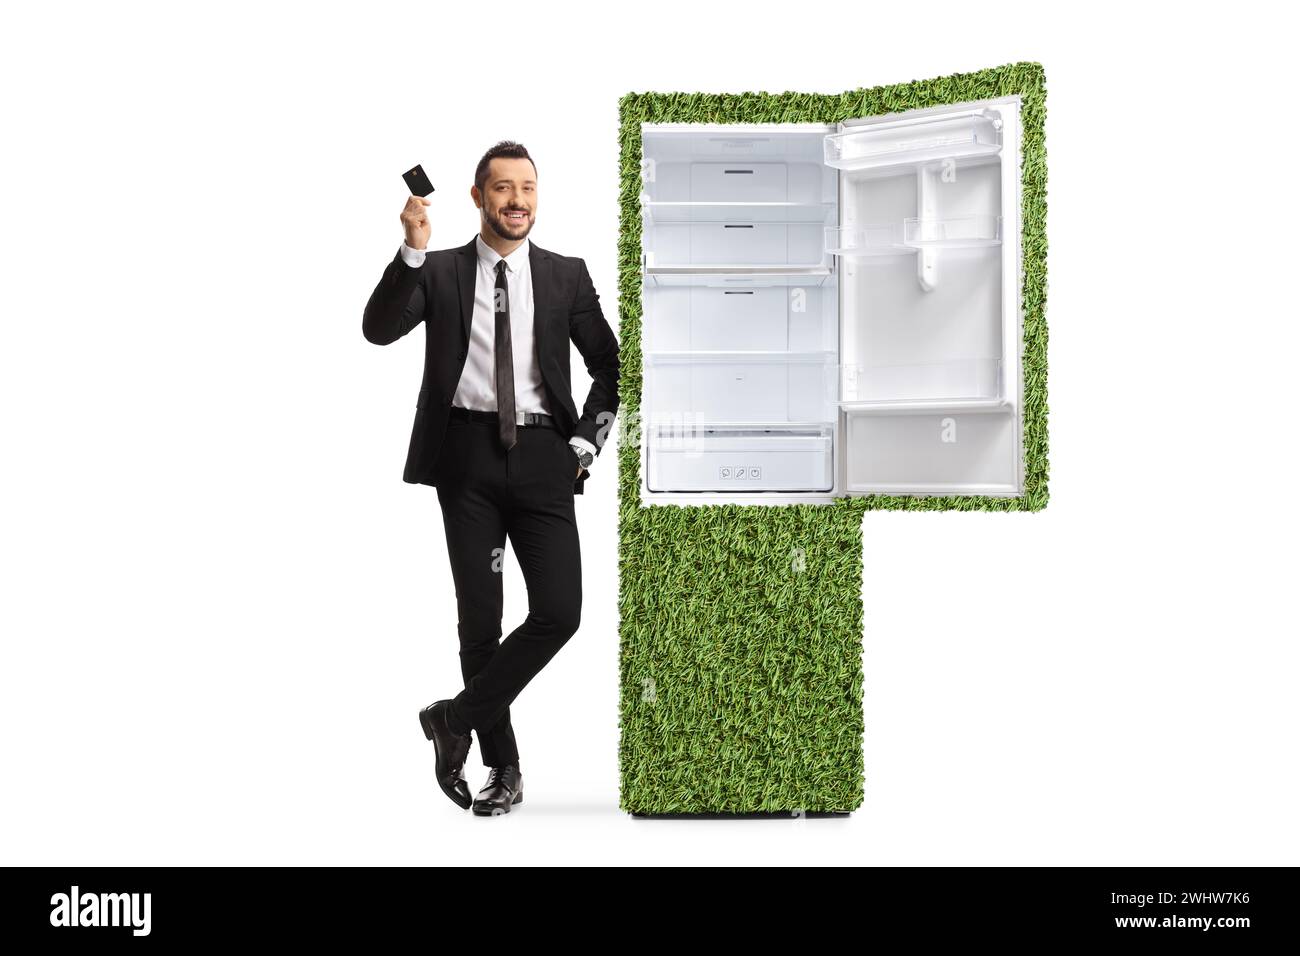 Homme d'affaires dans un costume appuyé sur un réfrigérateur économe en énergie et tenant une carte de crédit isolé sur fond blanc Banque D'Images